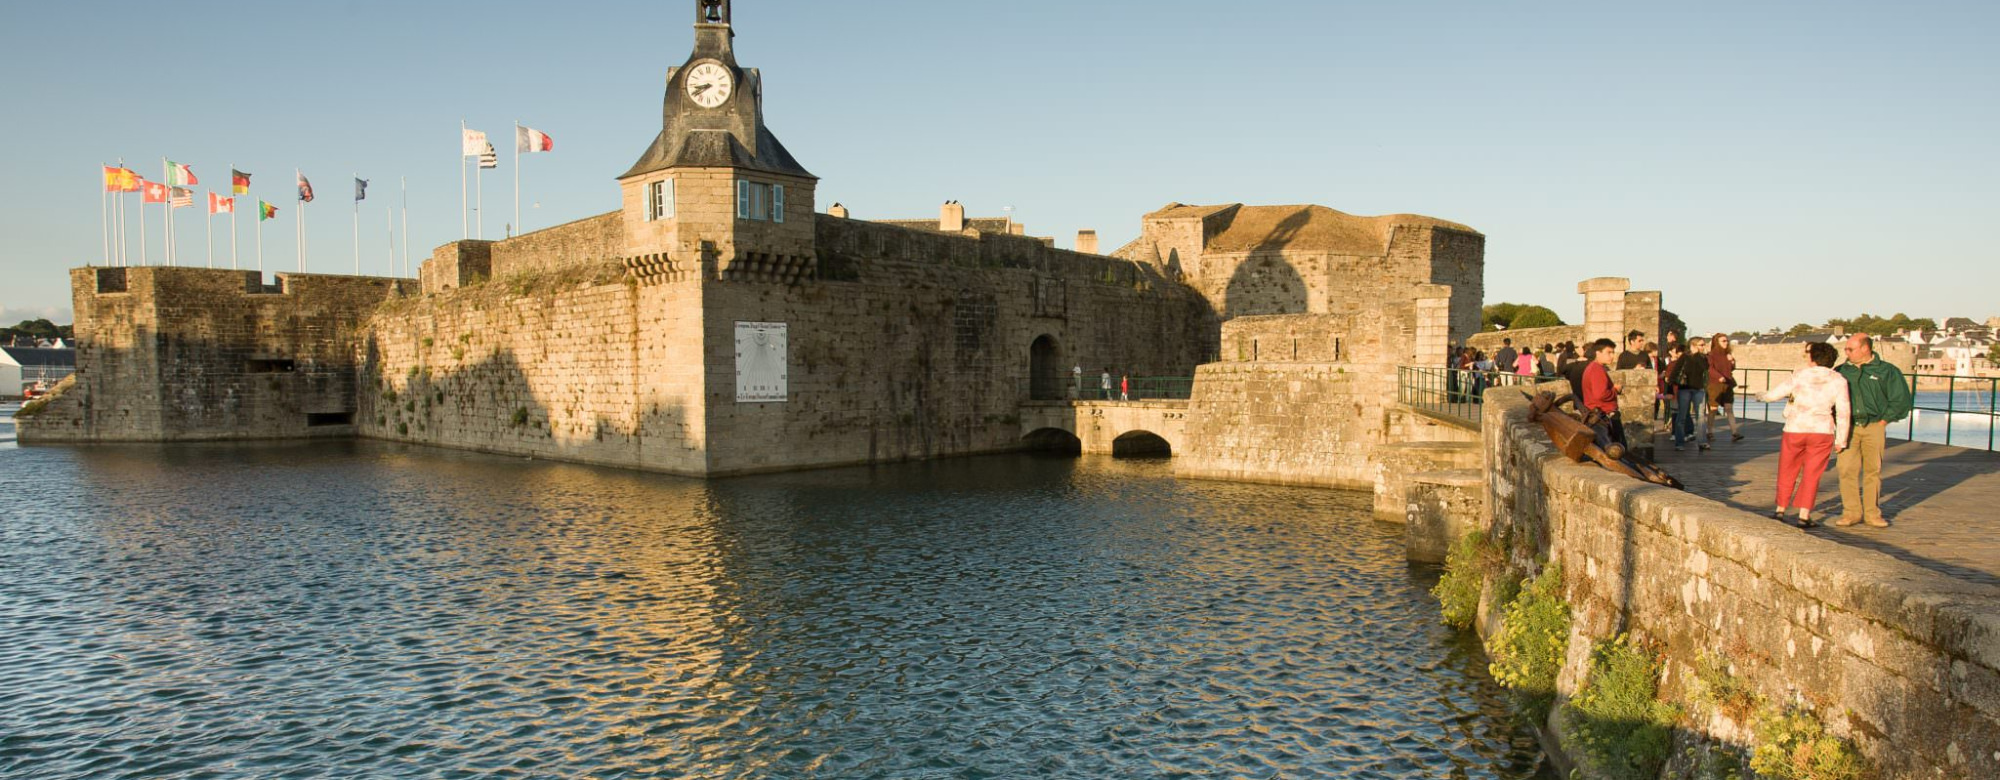 Die ummauerte Stadt Concarneau (Finistère, Süd-Bretagne)